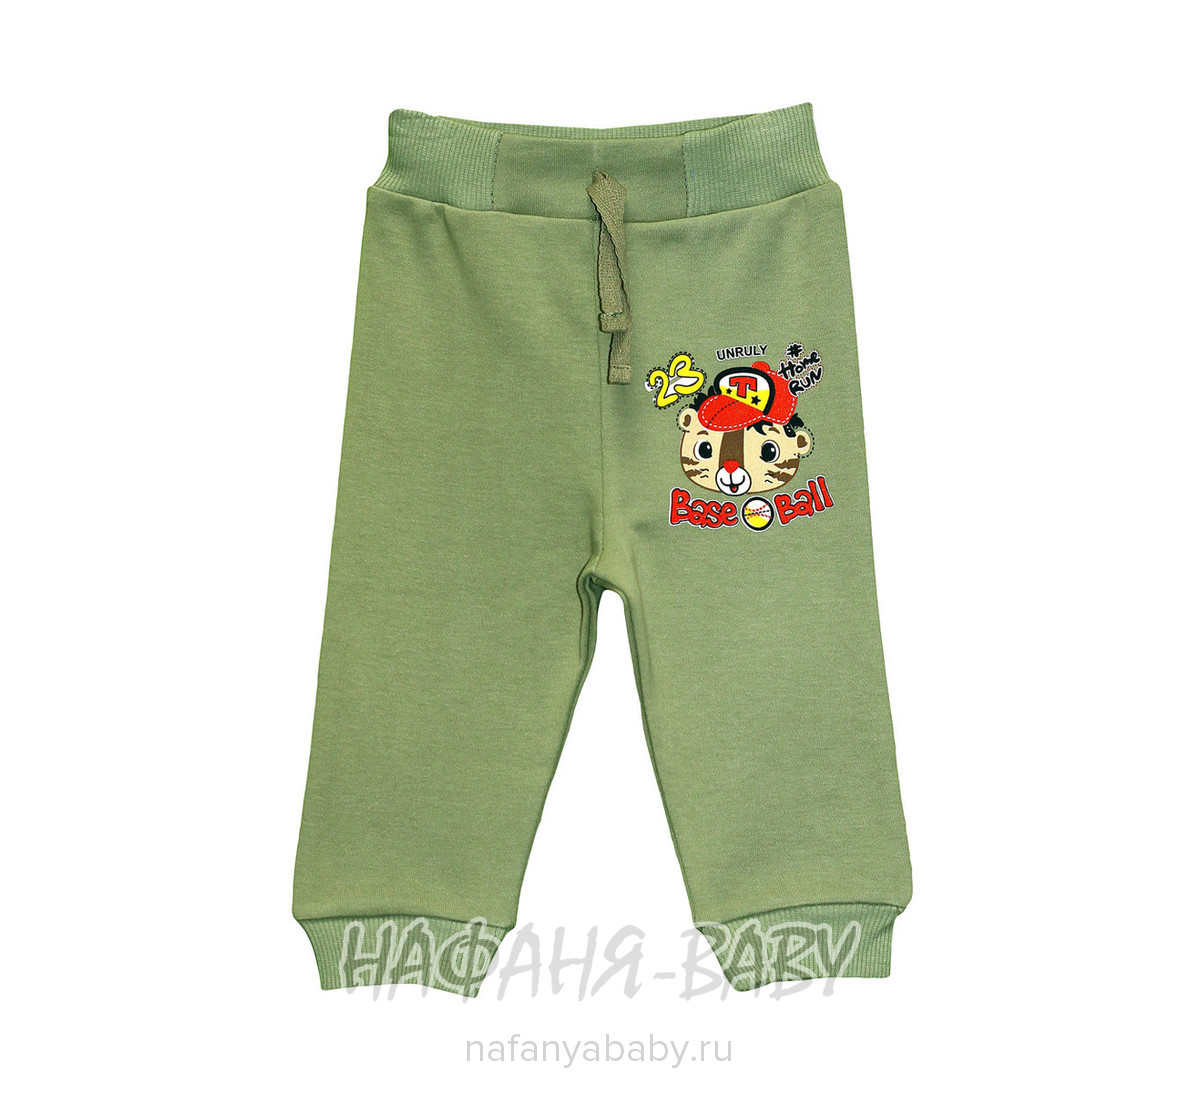 Детские трикотажные брюки UNRULY арт: 5487, 1-4 года, оптом Турция